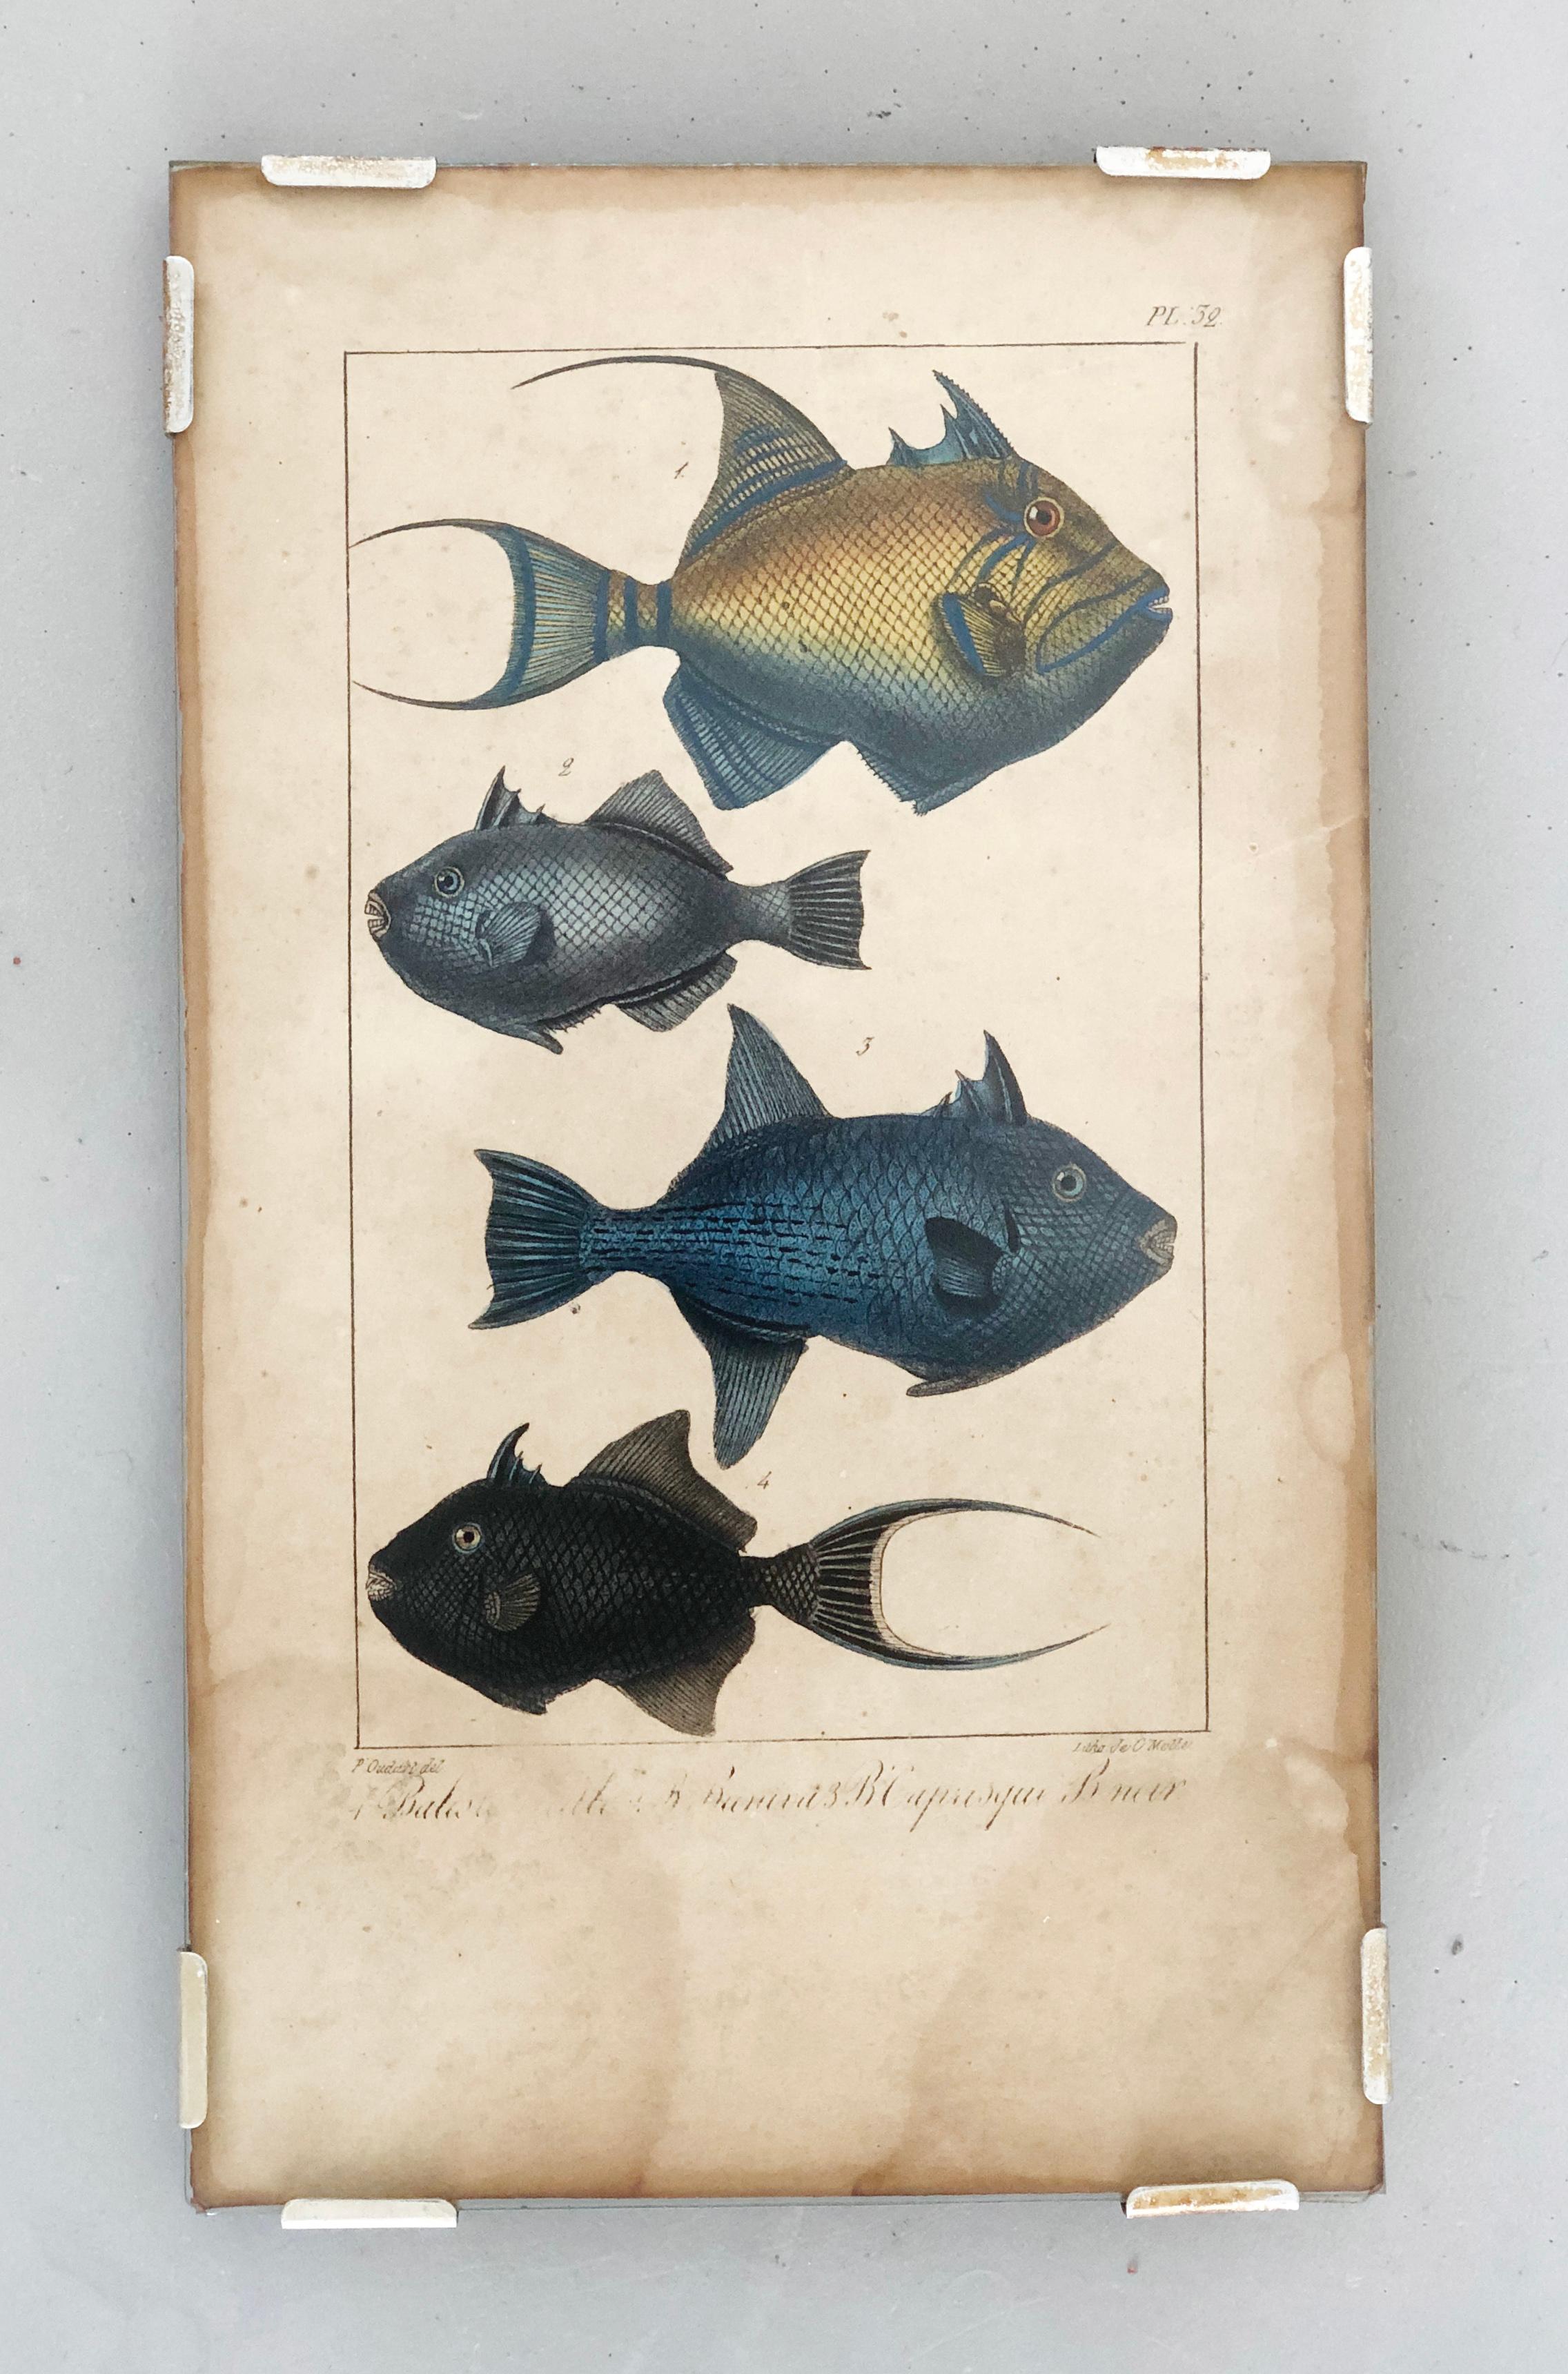 Naturhistorische Lithographie, 4 tropische Fische - Tafel 32 - P. Oudart & C. Motte.
Im Stil von Maria Sibylla Merian

Es handelt sich um eine handkolorierte Lithografie mit der Darstellung 